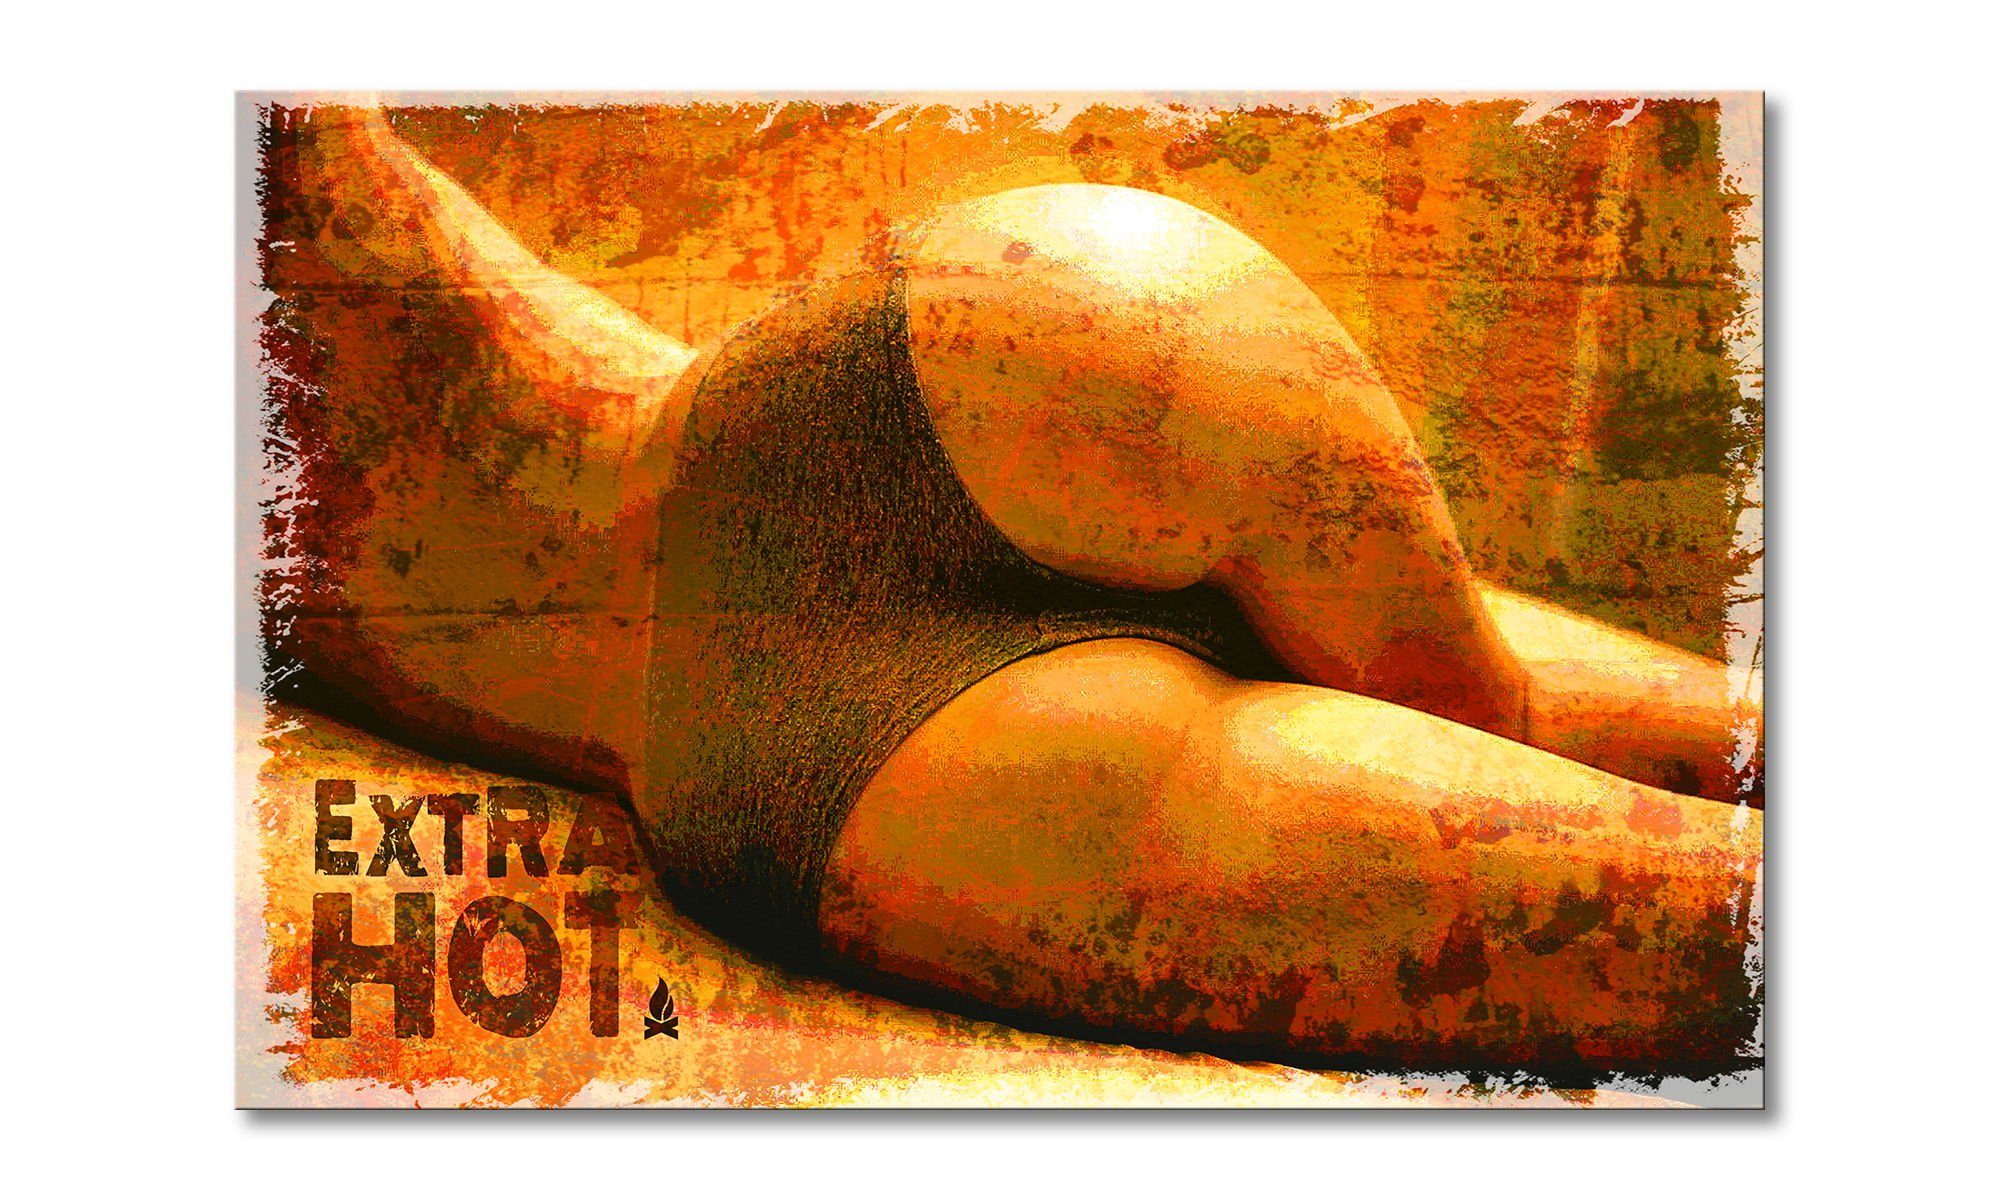 WandbilderXXL Leinwandbild Extra Hot, erotisch (1 St), Wandbild,in 6 Größen erhältlich